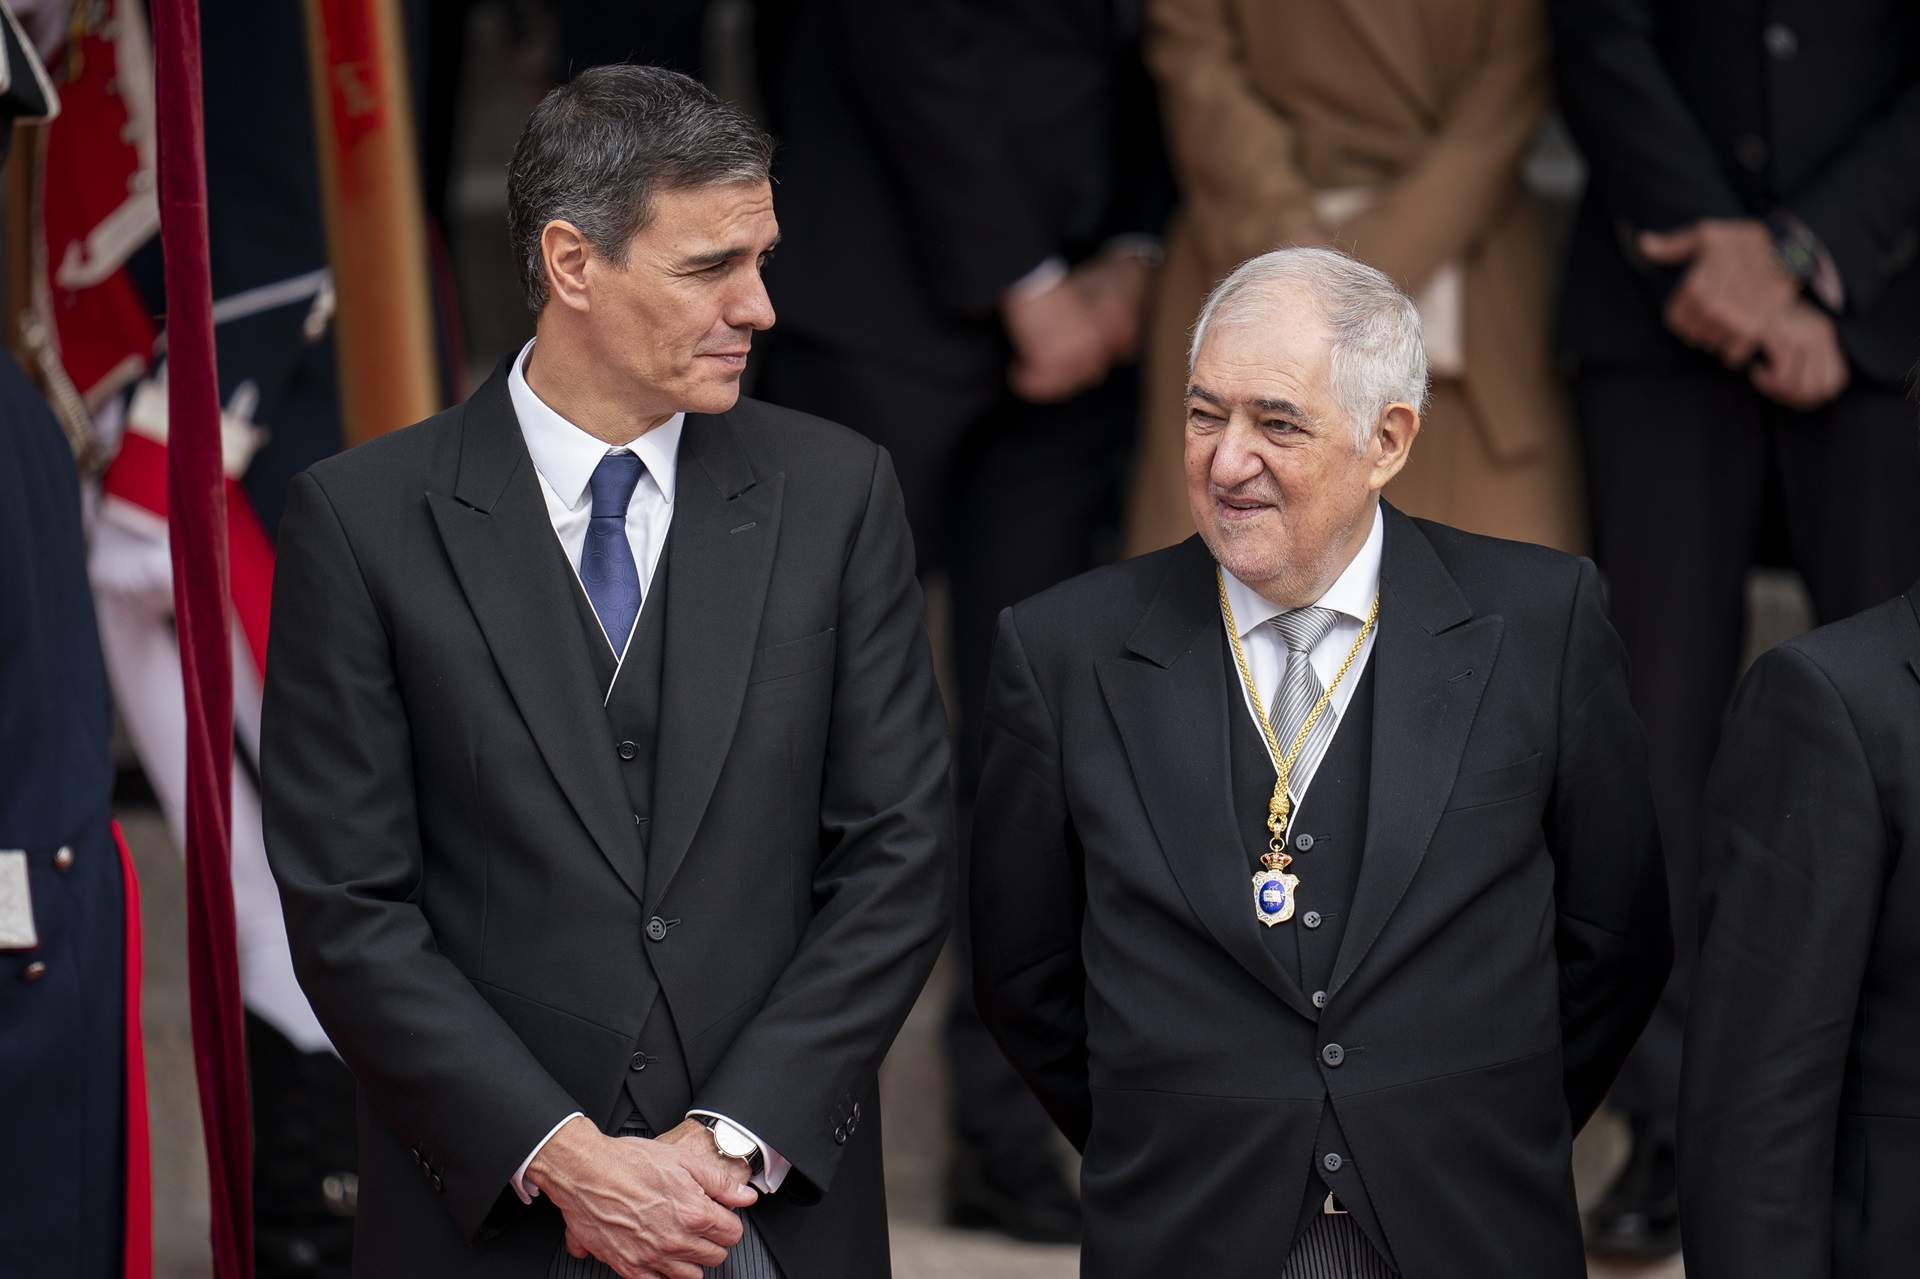 President del govern espanyol, Pedro Sánchez i President del Tribunal Constitucional, Cándido Conde Pumpido / Europa Press